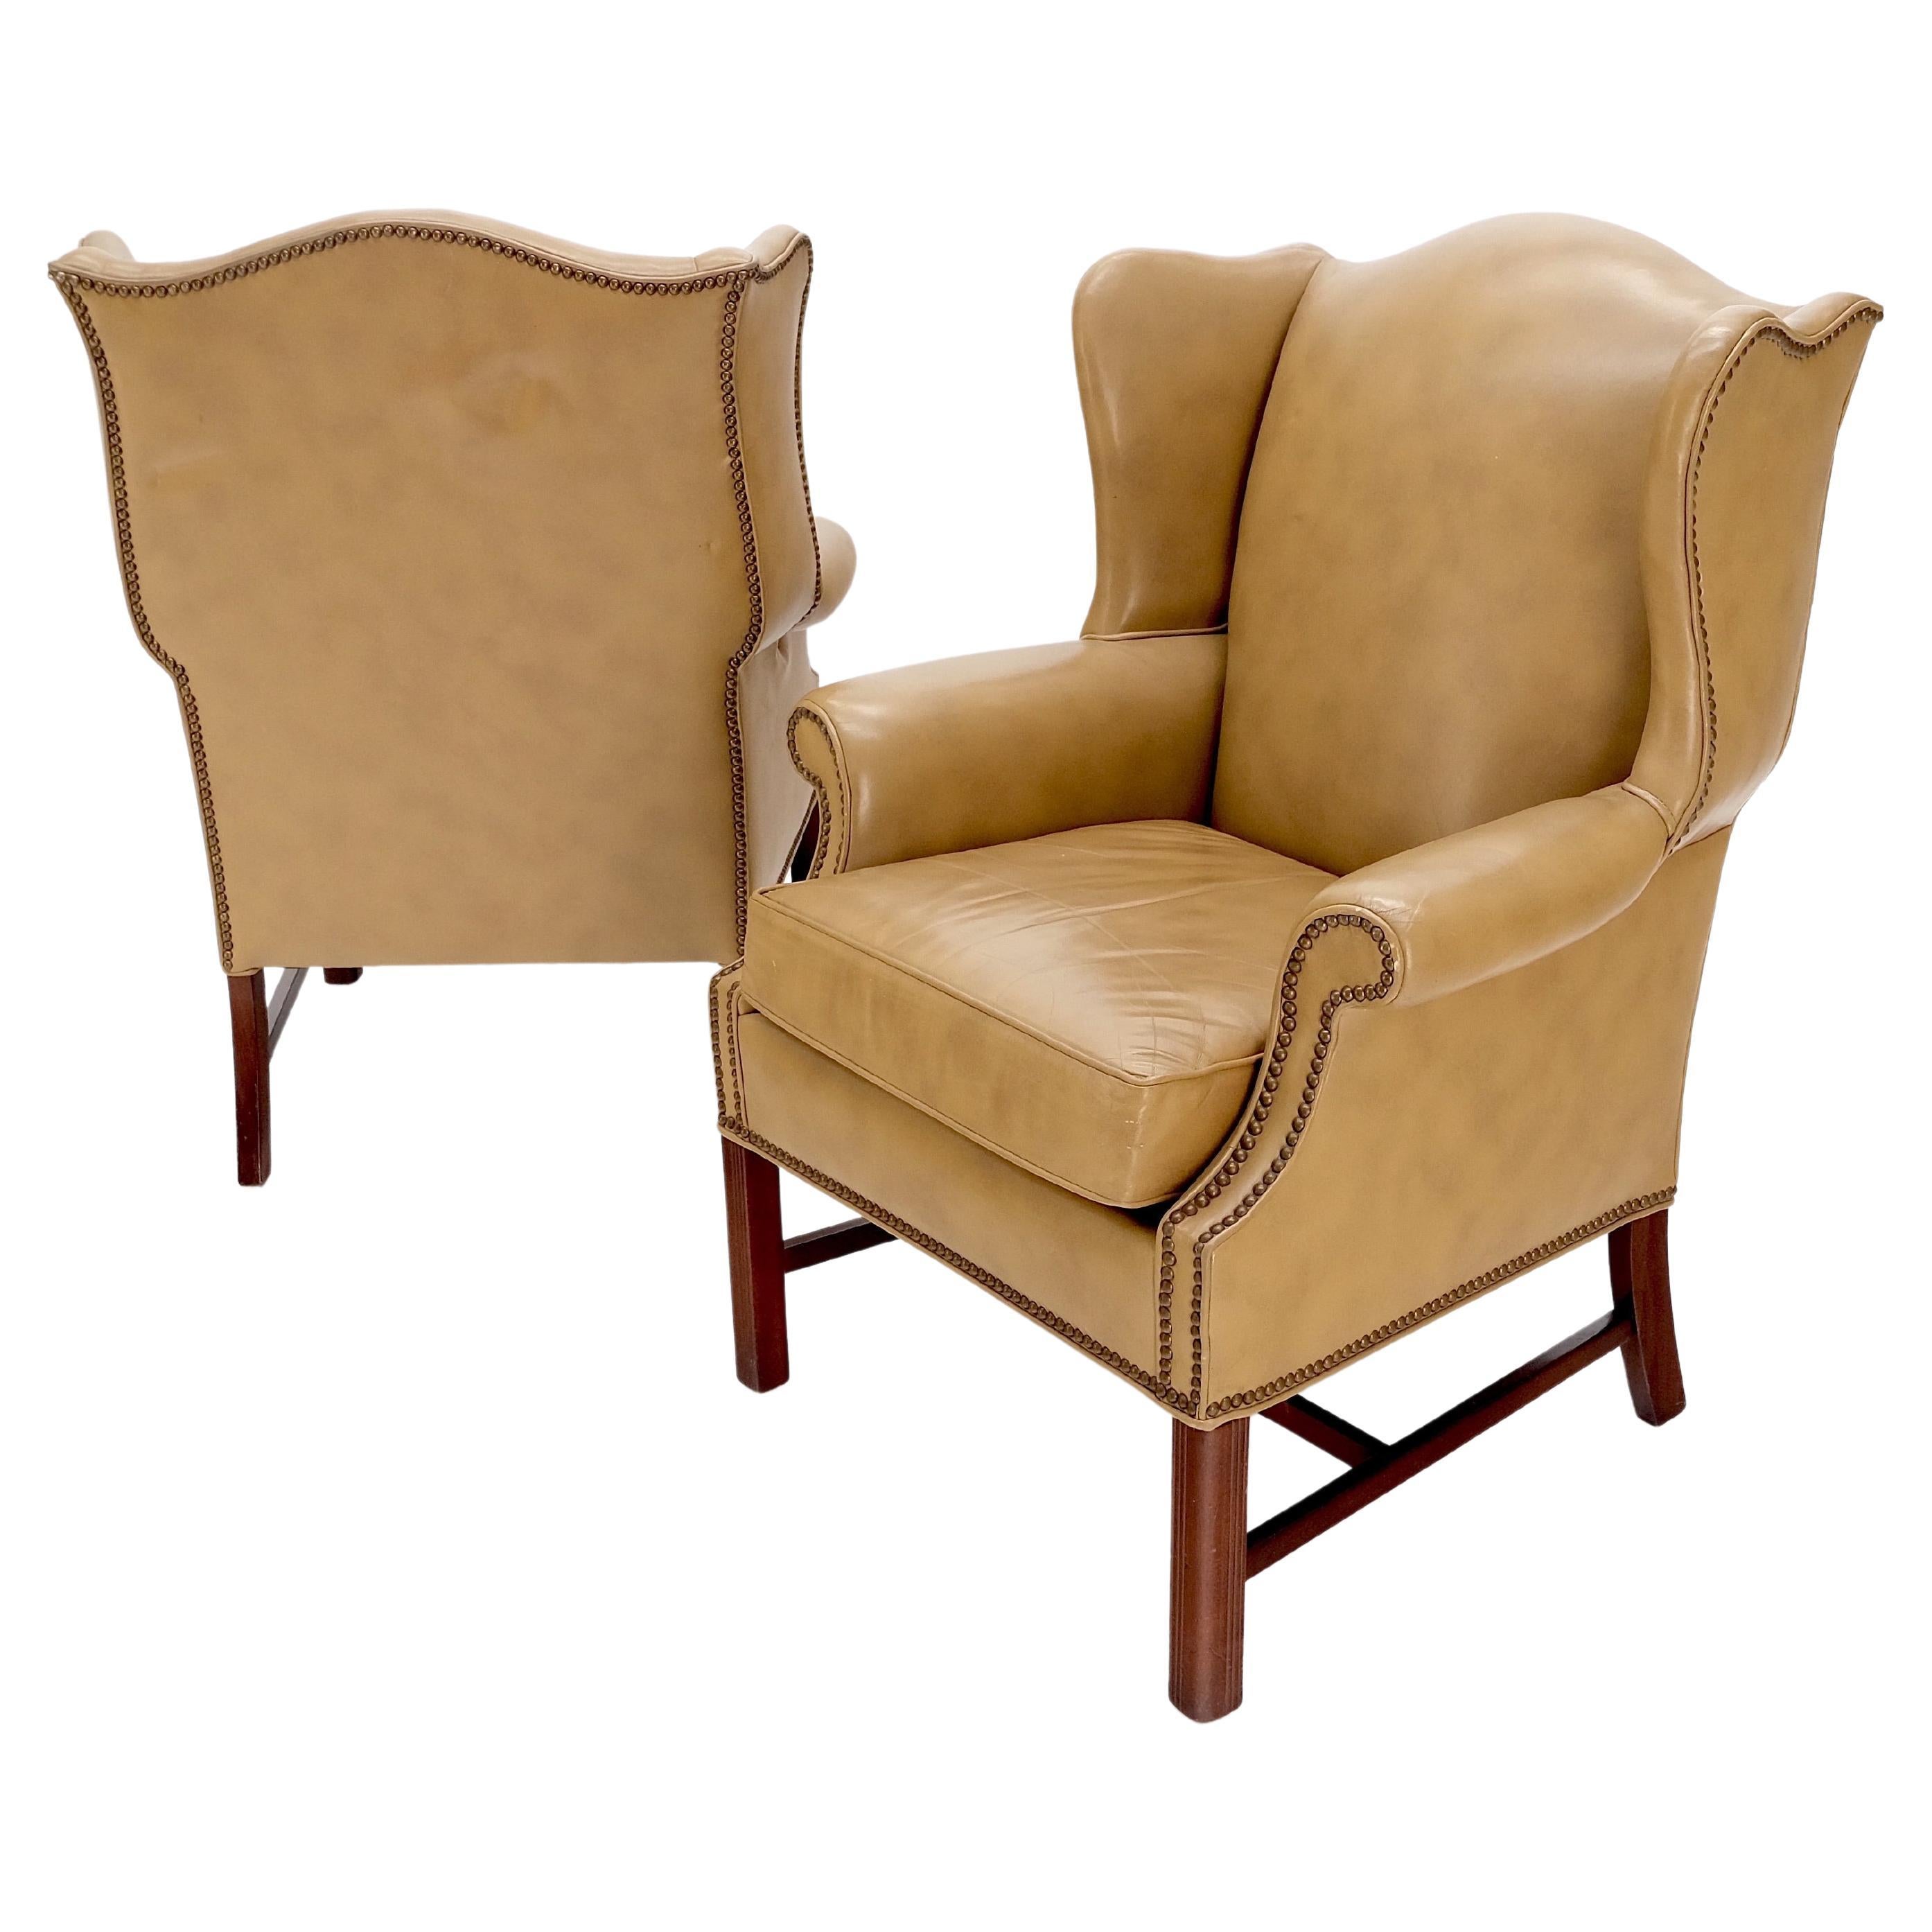 Paire de hautes chaises à oreilles en cuir brun clair sur socle extensible en acajou massif MINT !